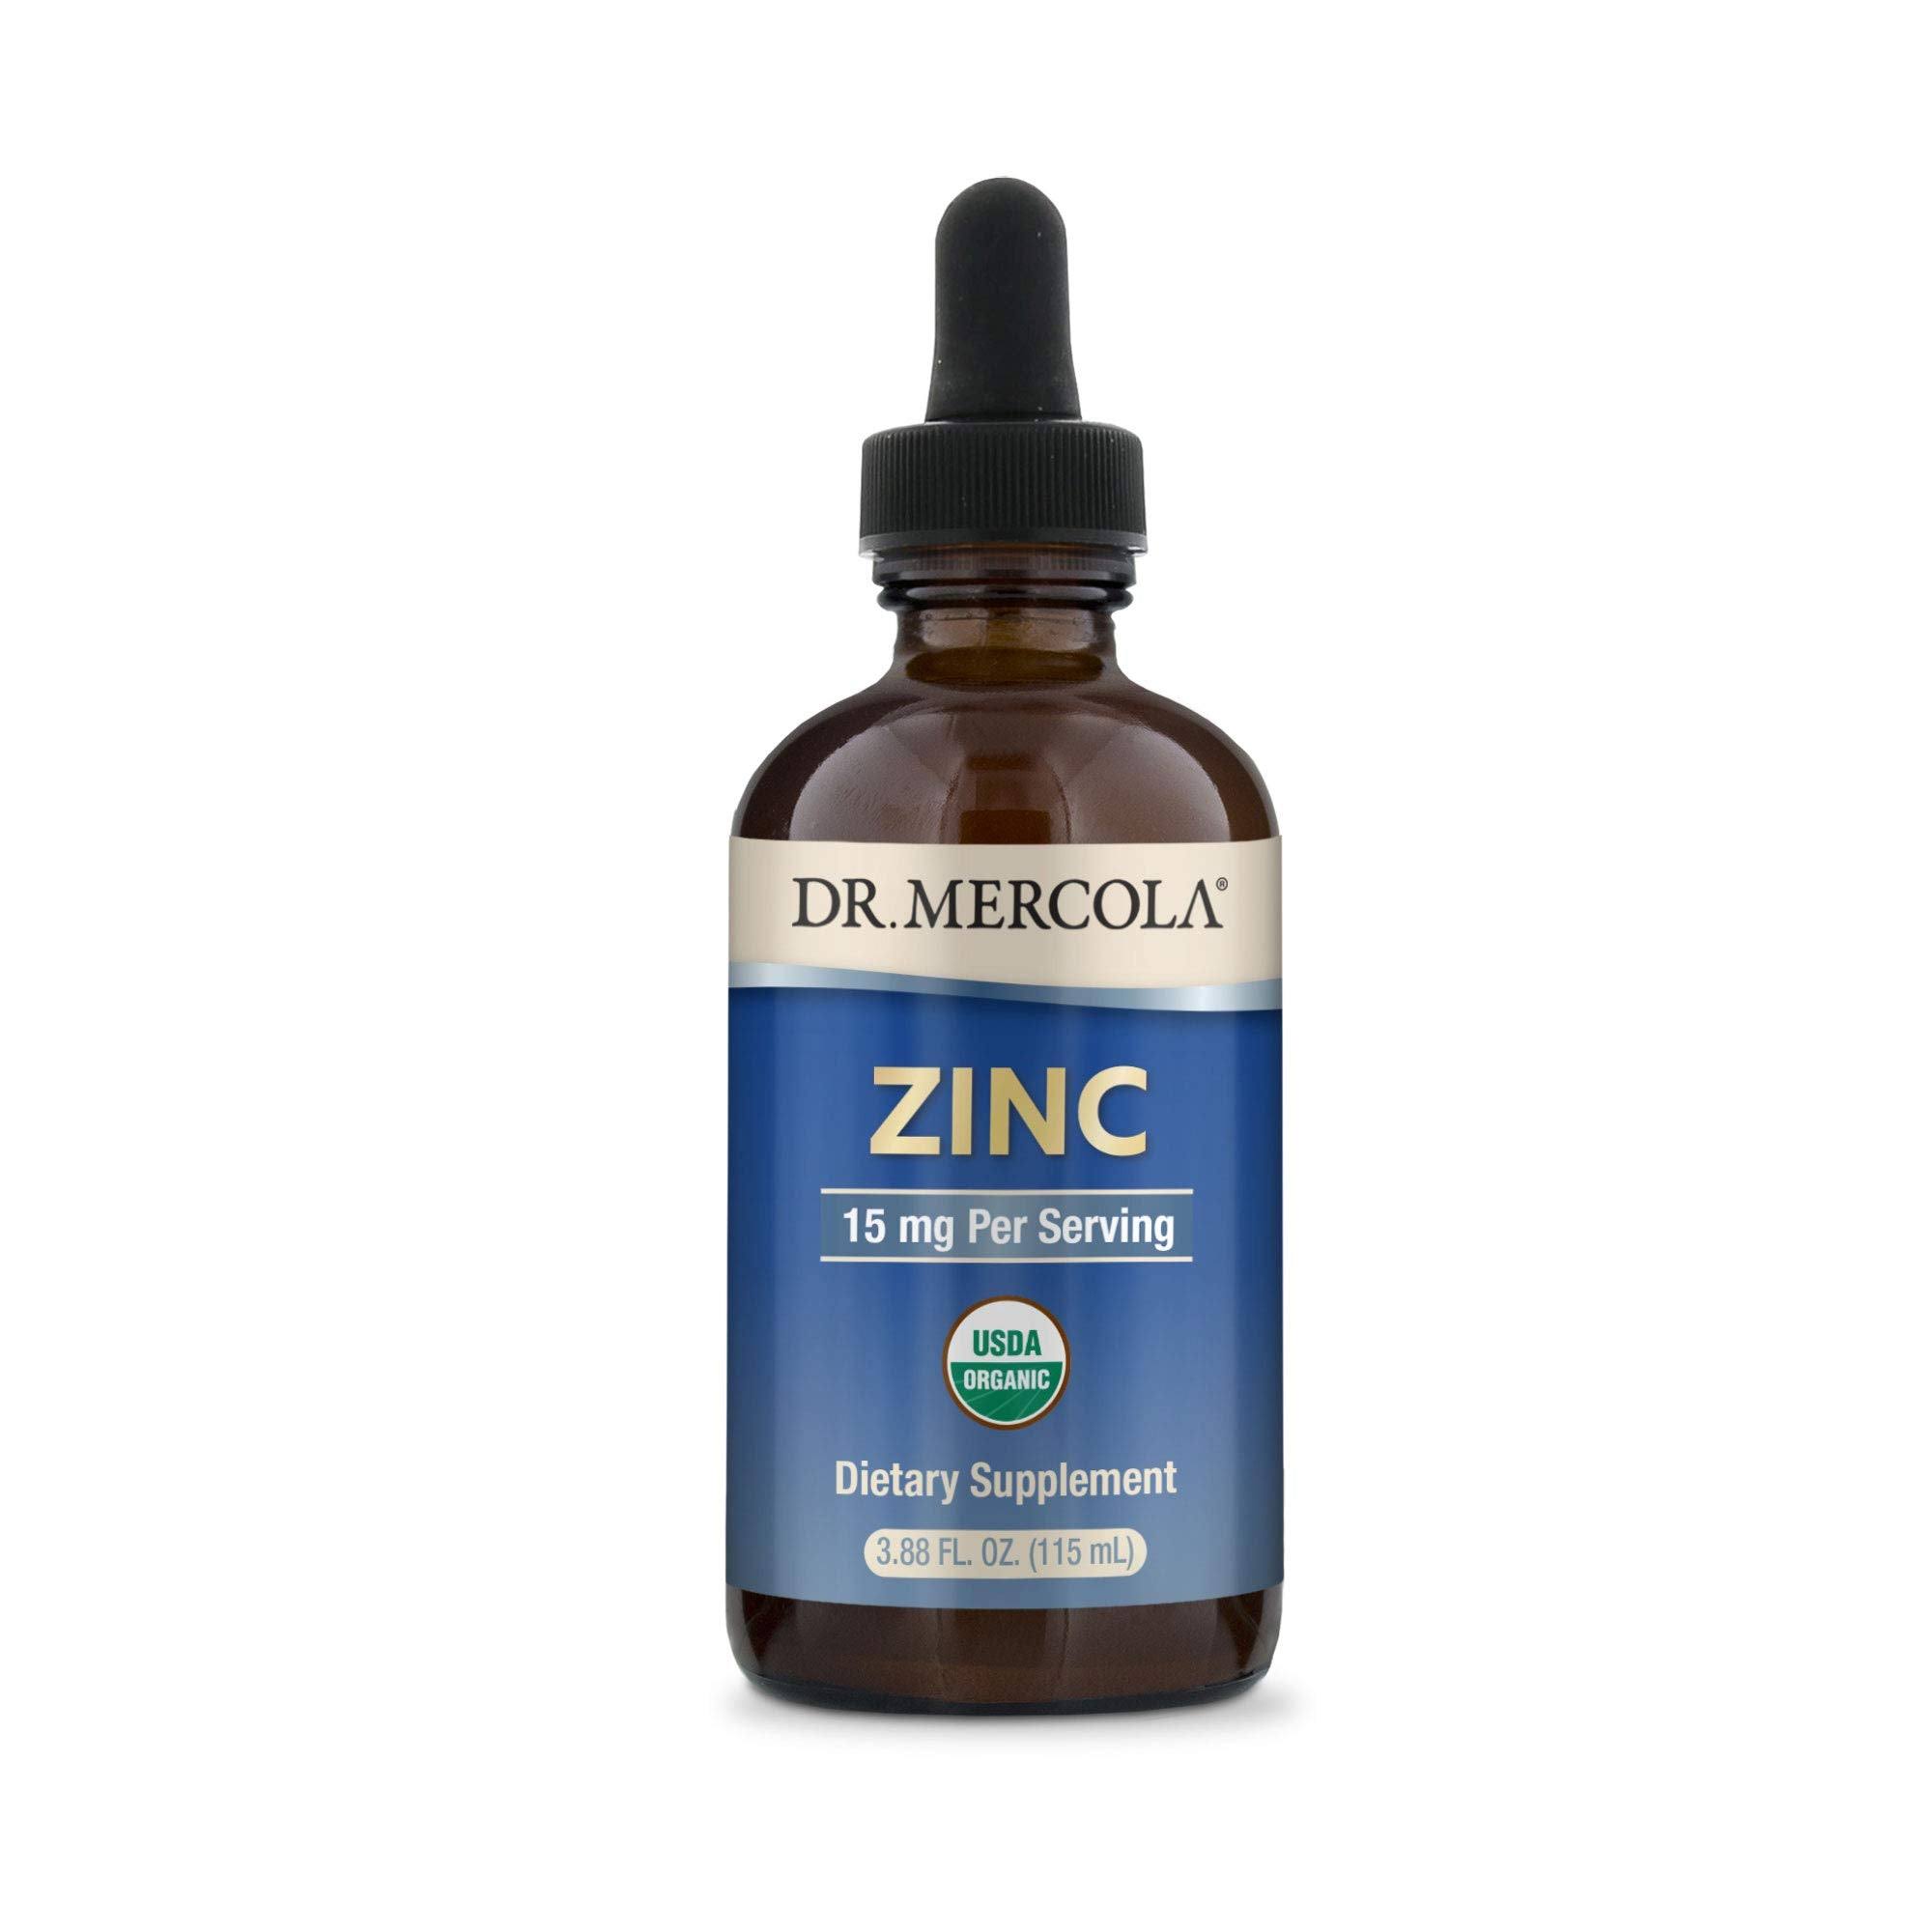 Dr Mercola Liquid Zinc Drops - 115ml